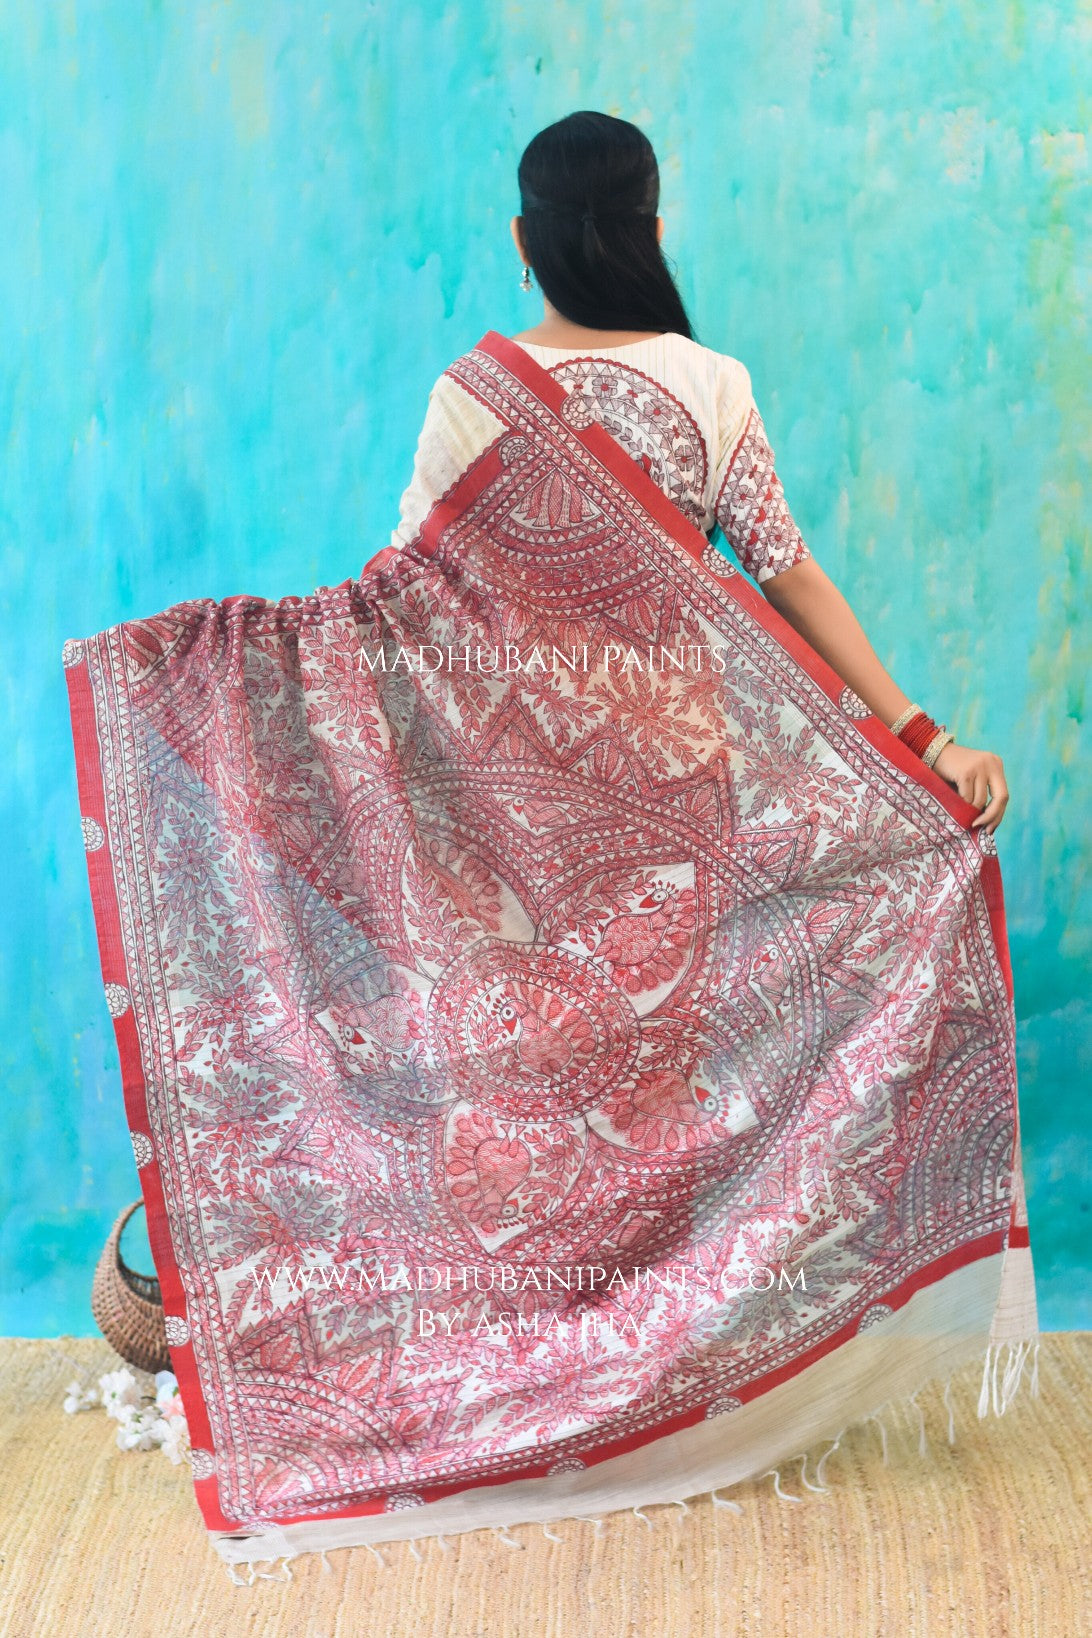 LAALIMA Hand-painted Madhubani Chanderi Saree Blouse Set